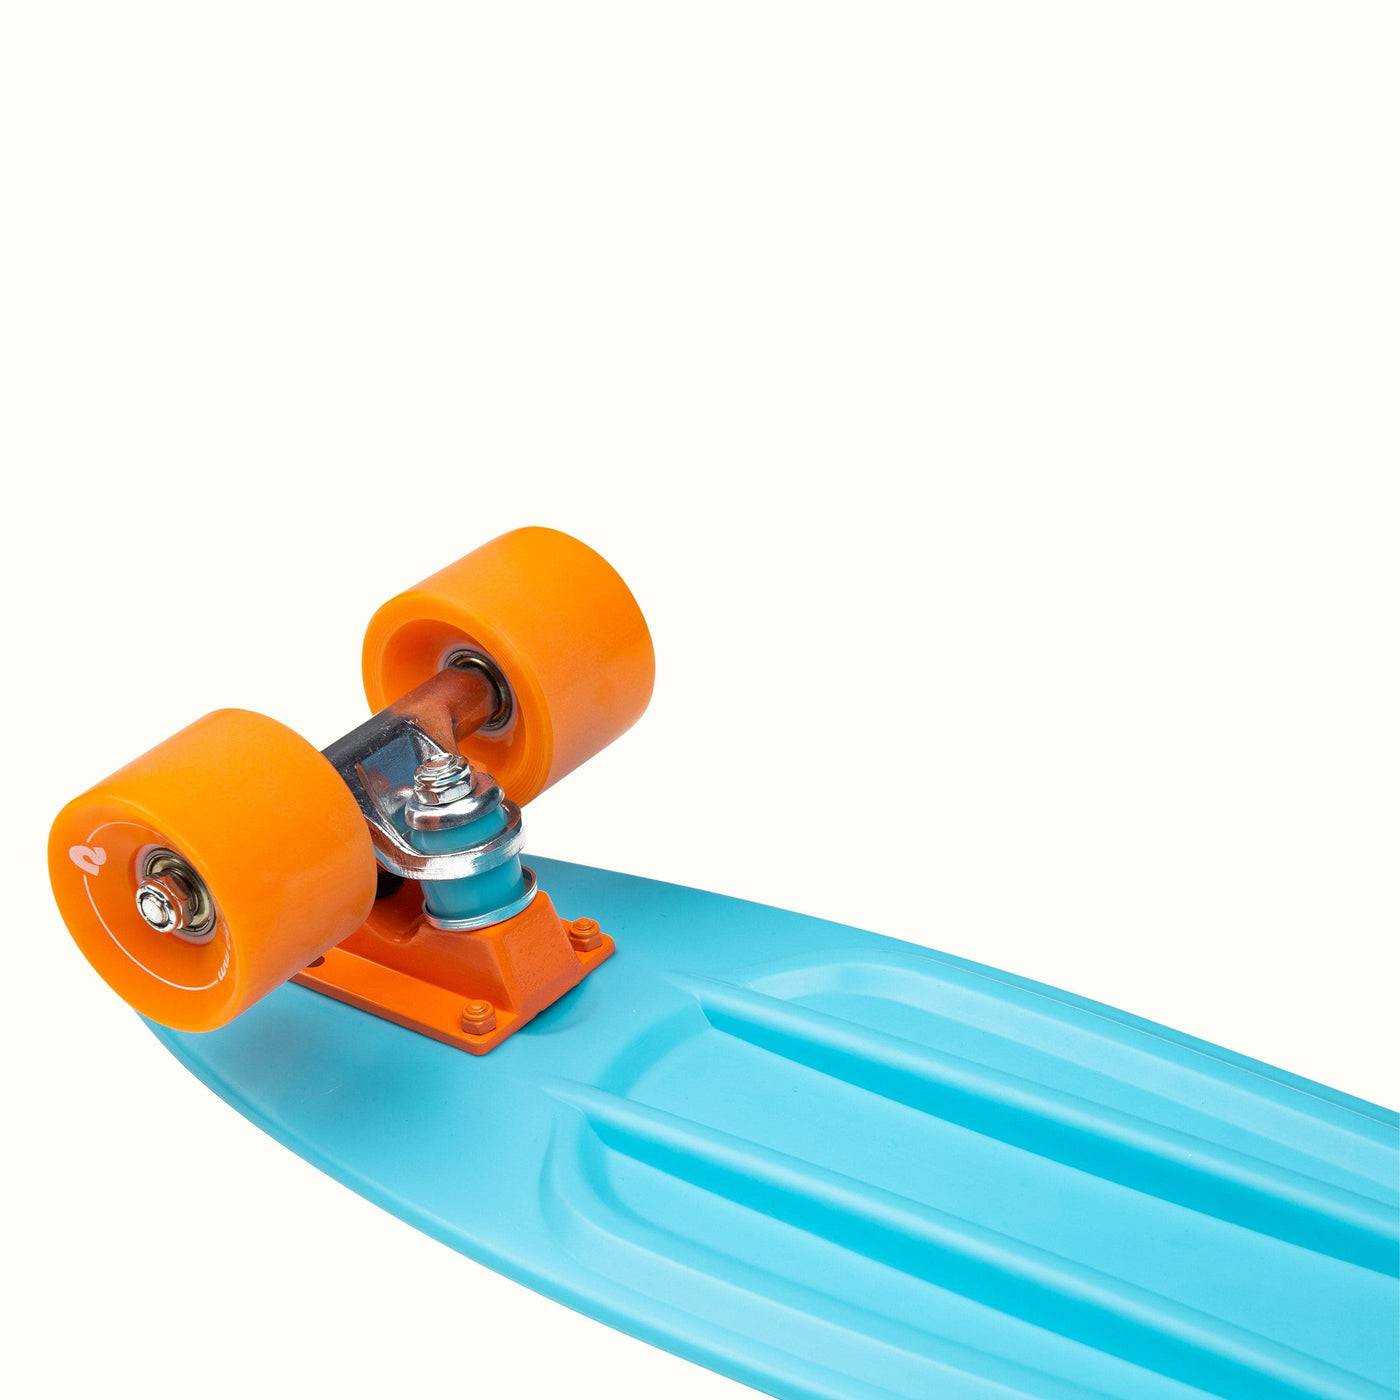 Quip Mini Cruiser Skateboard | Sky Blue 22.5"